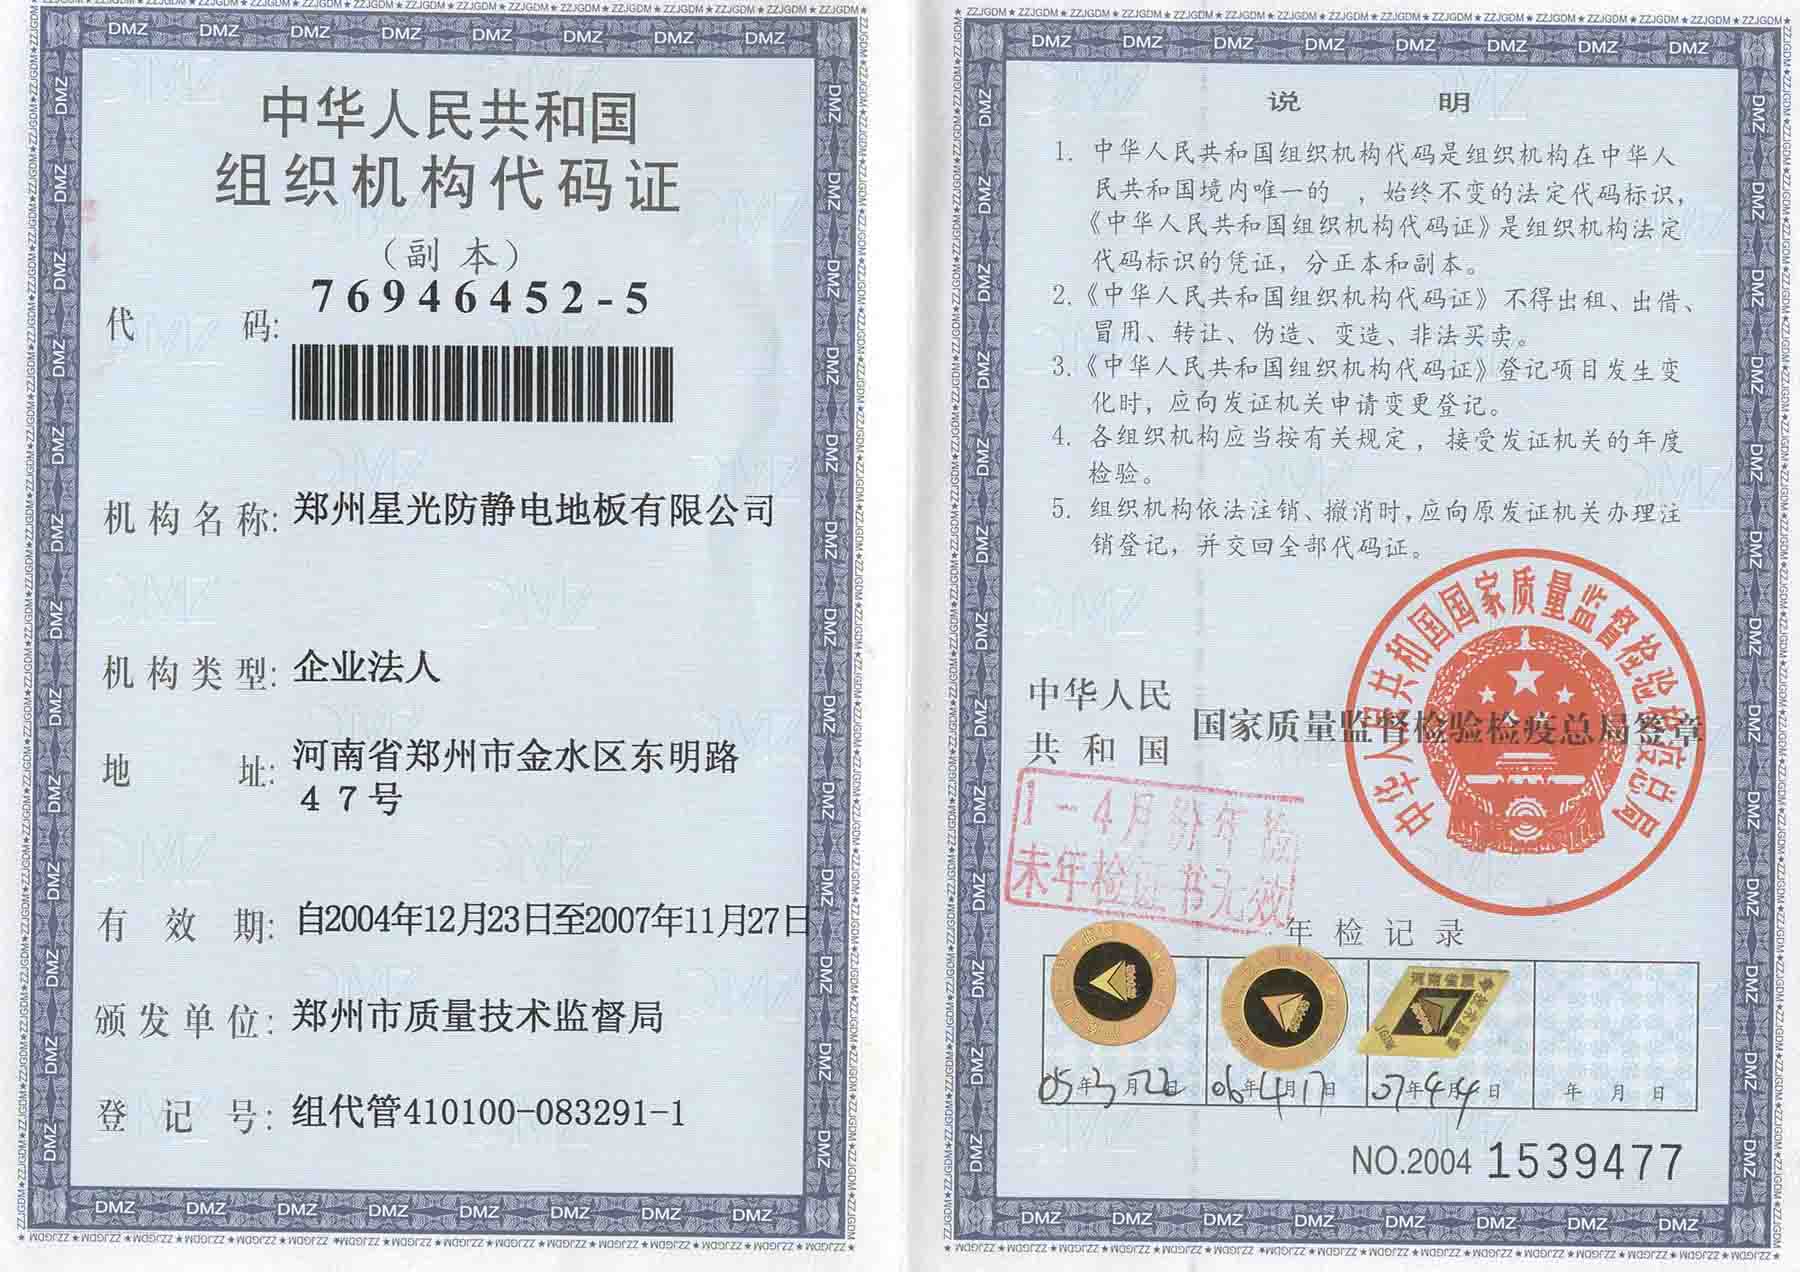 中华人名共和国组织机构代码证-资质荣誉-上海